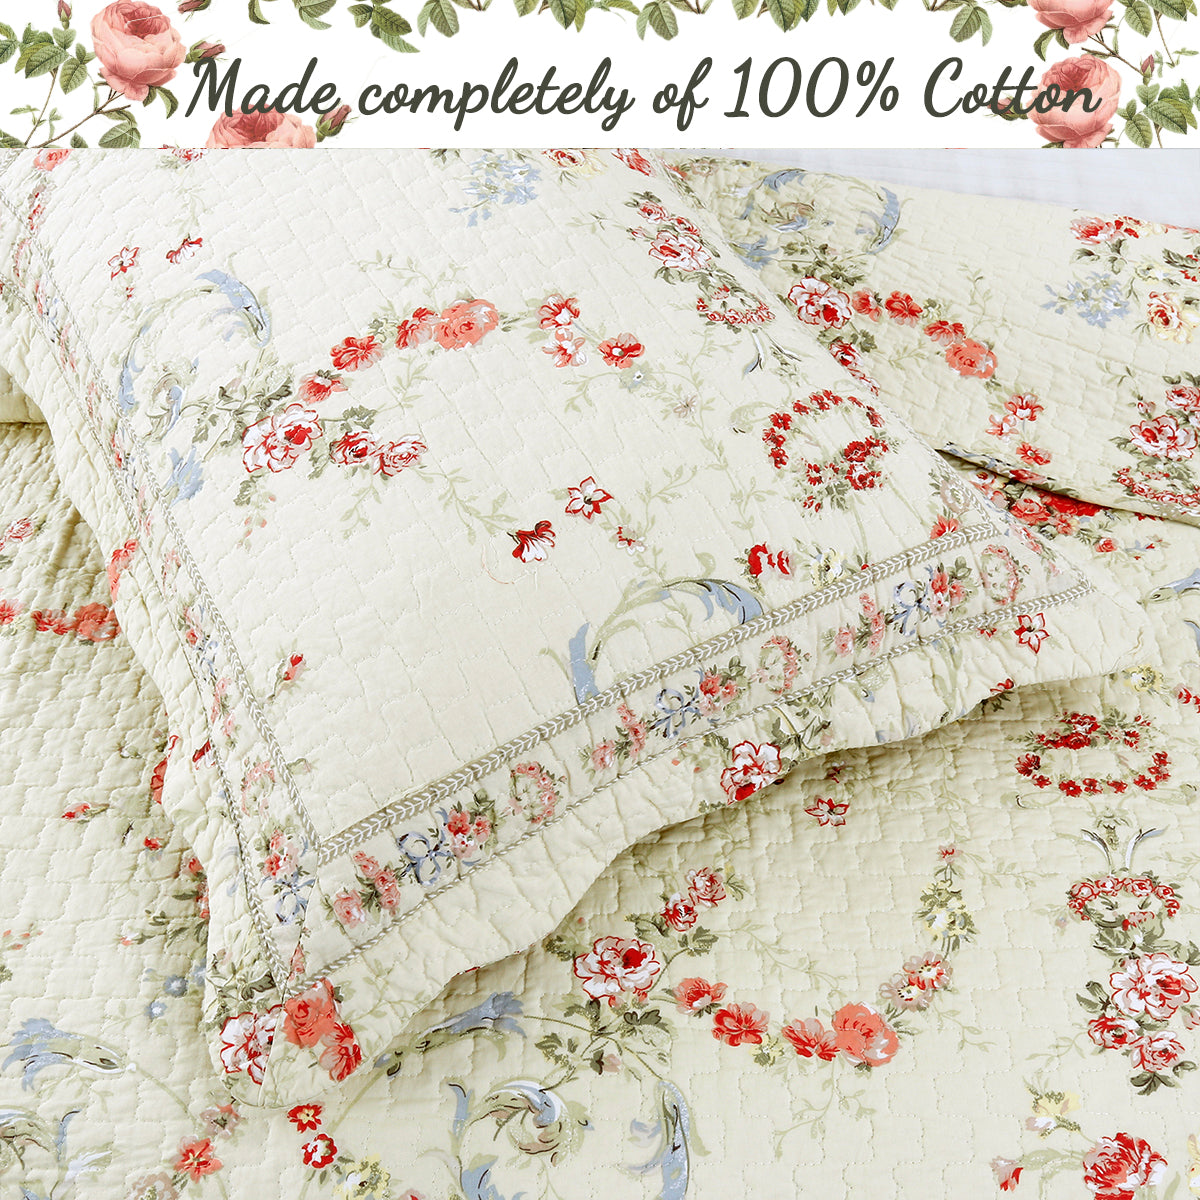 Rose Romance Floral Cotton Reversible Quilt Bedding Set